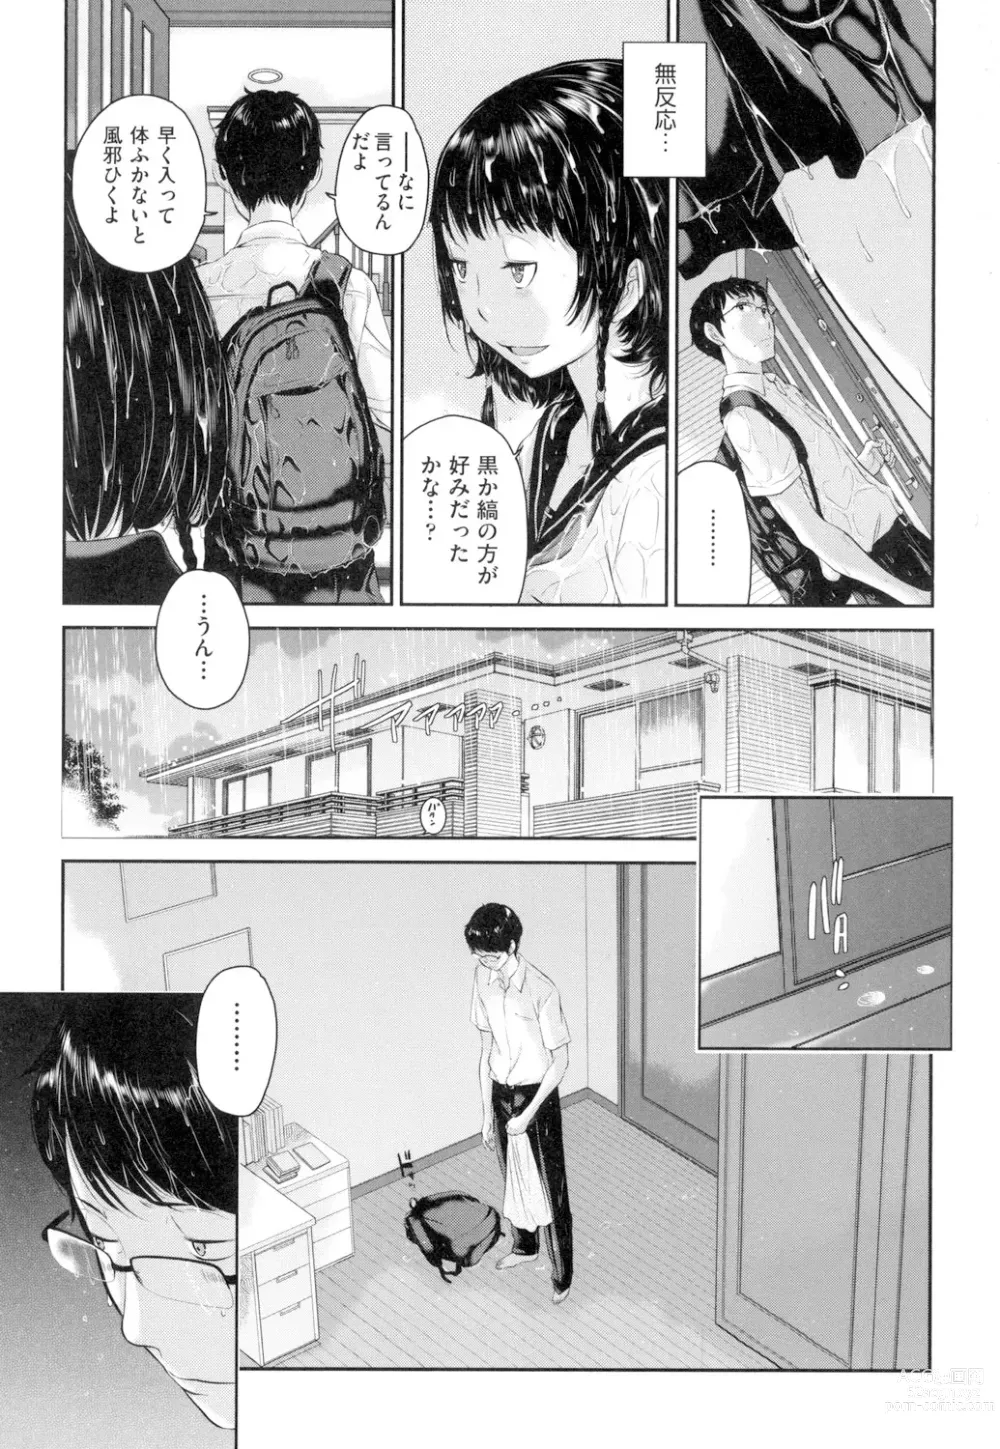 Page 8 of manga Seifuku Shijou Shugi -Natsu-